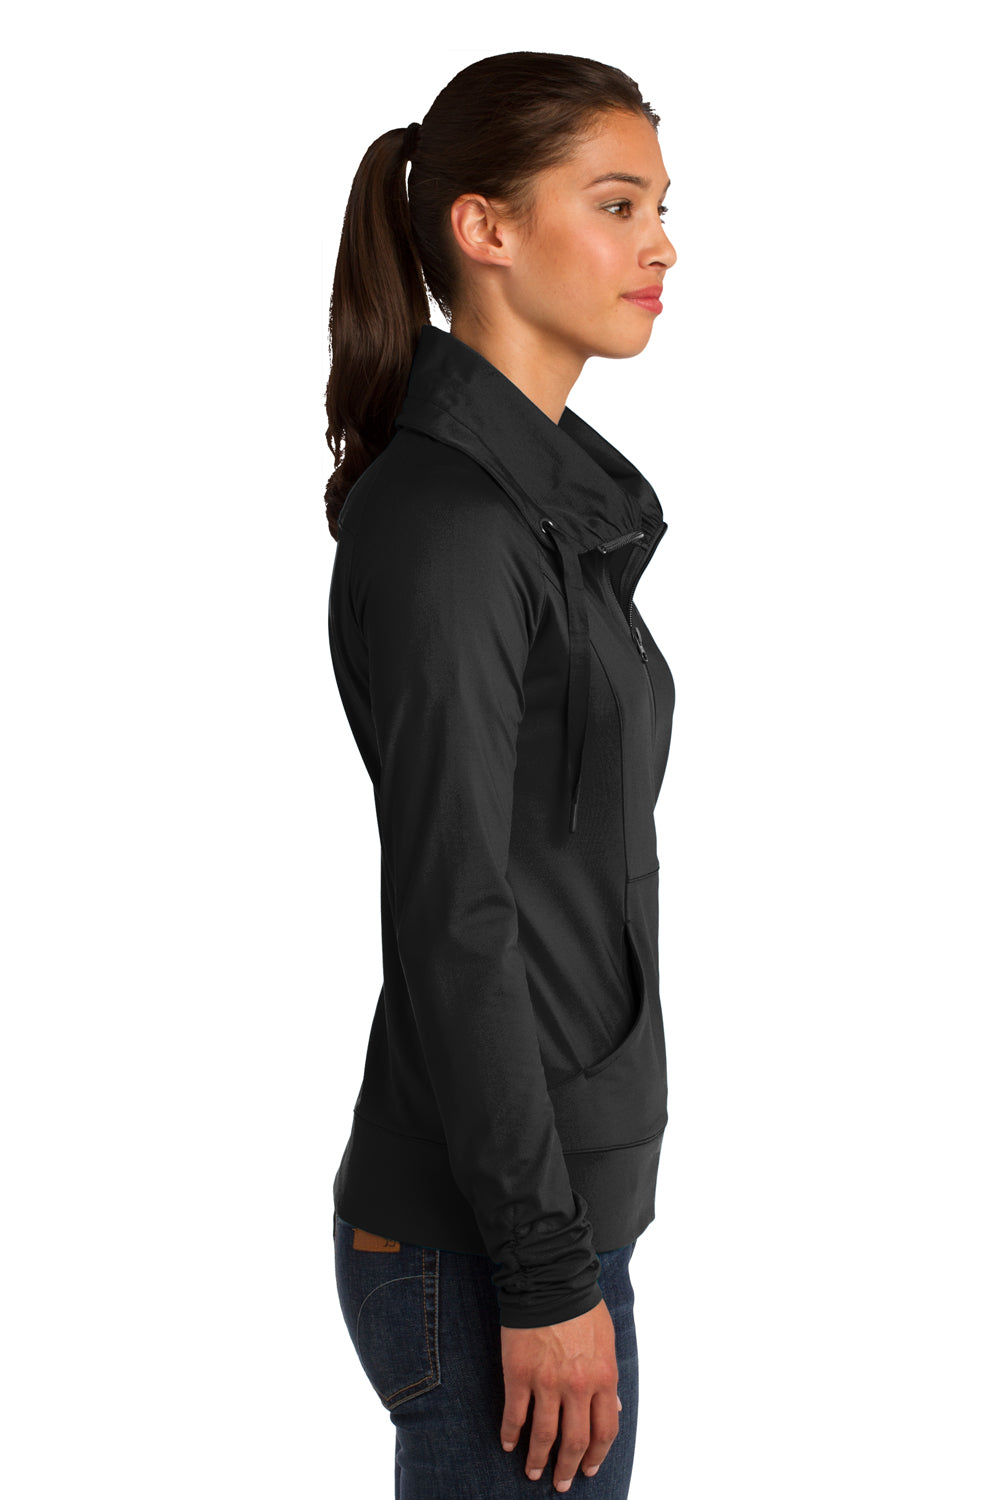 Sport-Tek LST852 Womens Sport-Wick Moisture Wicking Full Zip Jacket Black Side